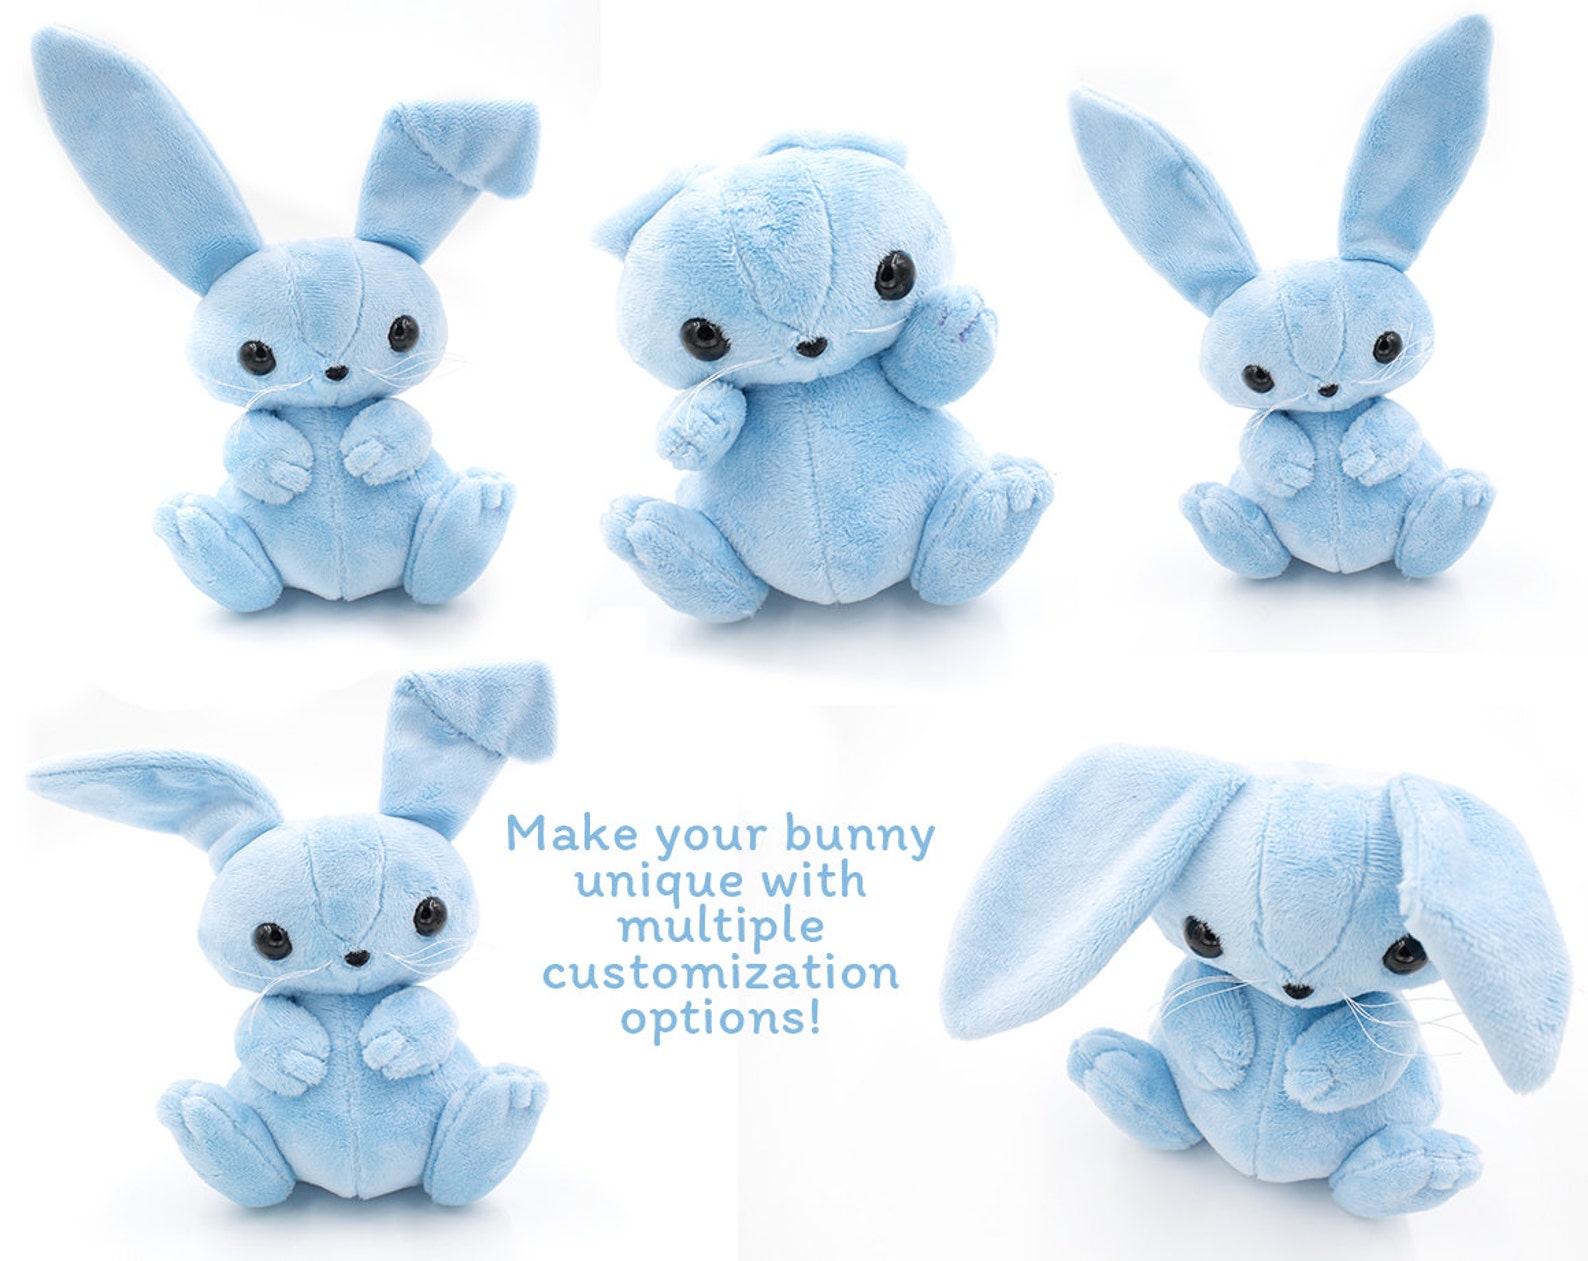 bunny-stuffed-animal-sewing-pattern-plush-toy-pattern-rabbit-etsy